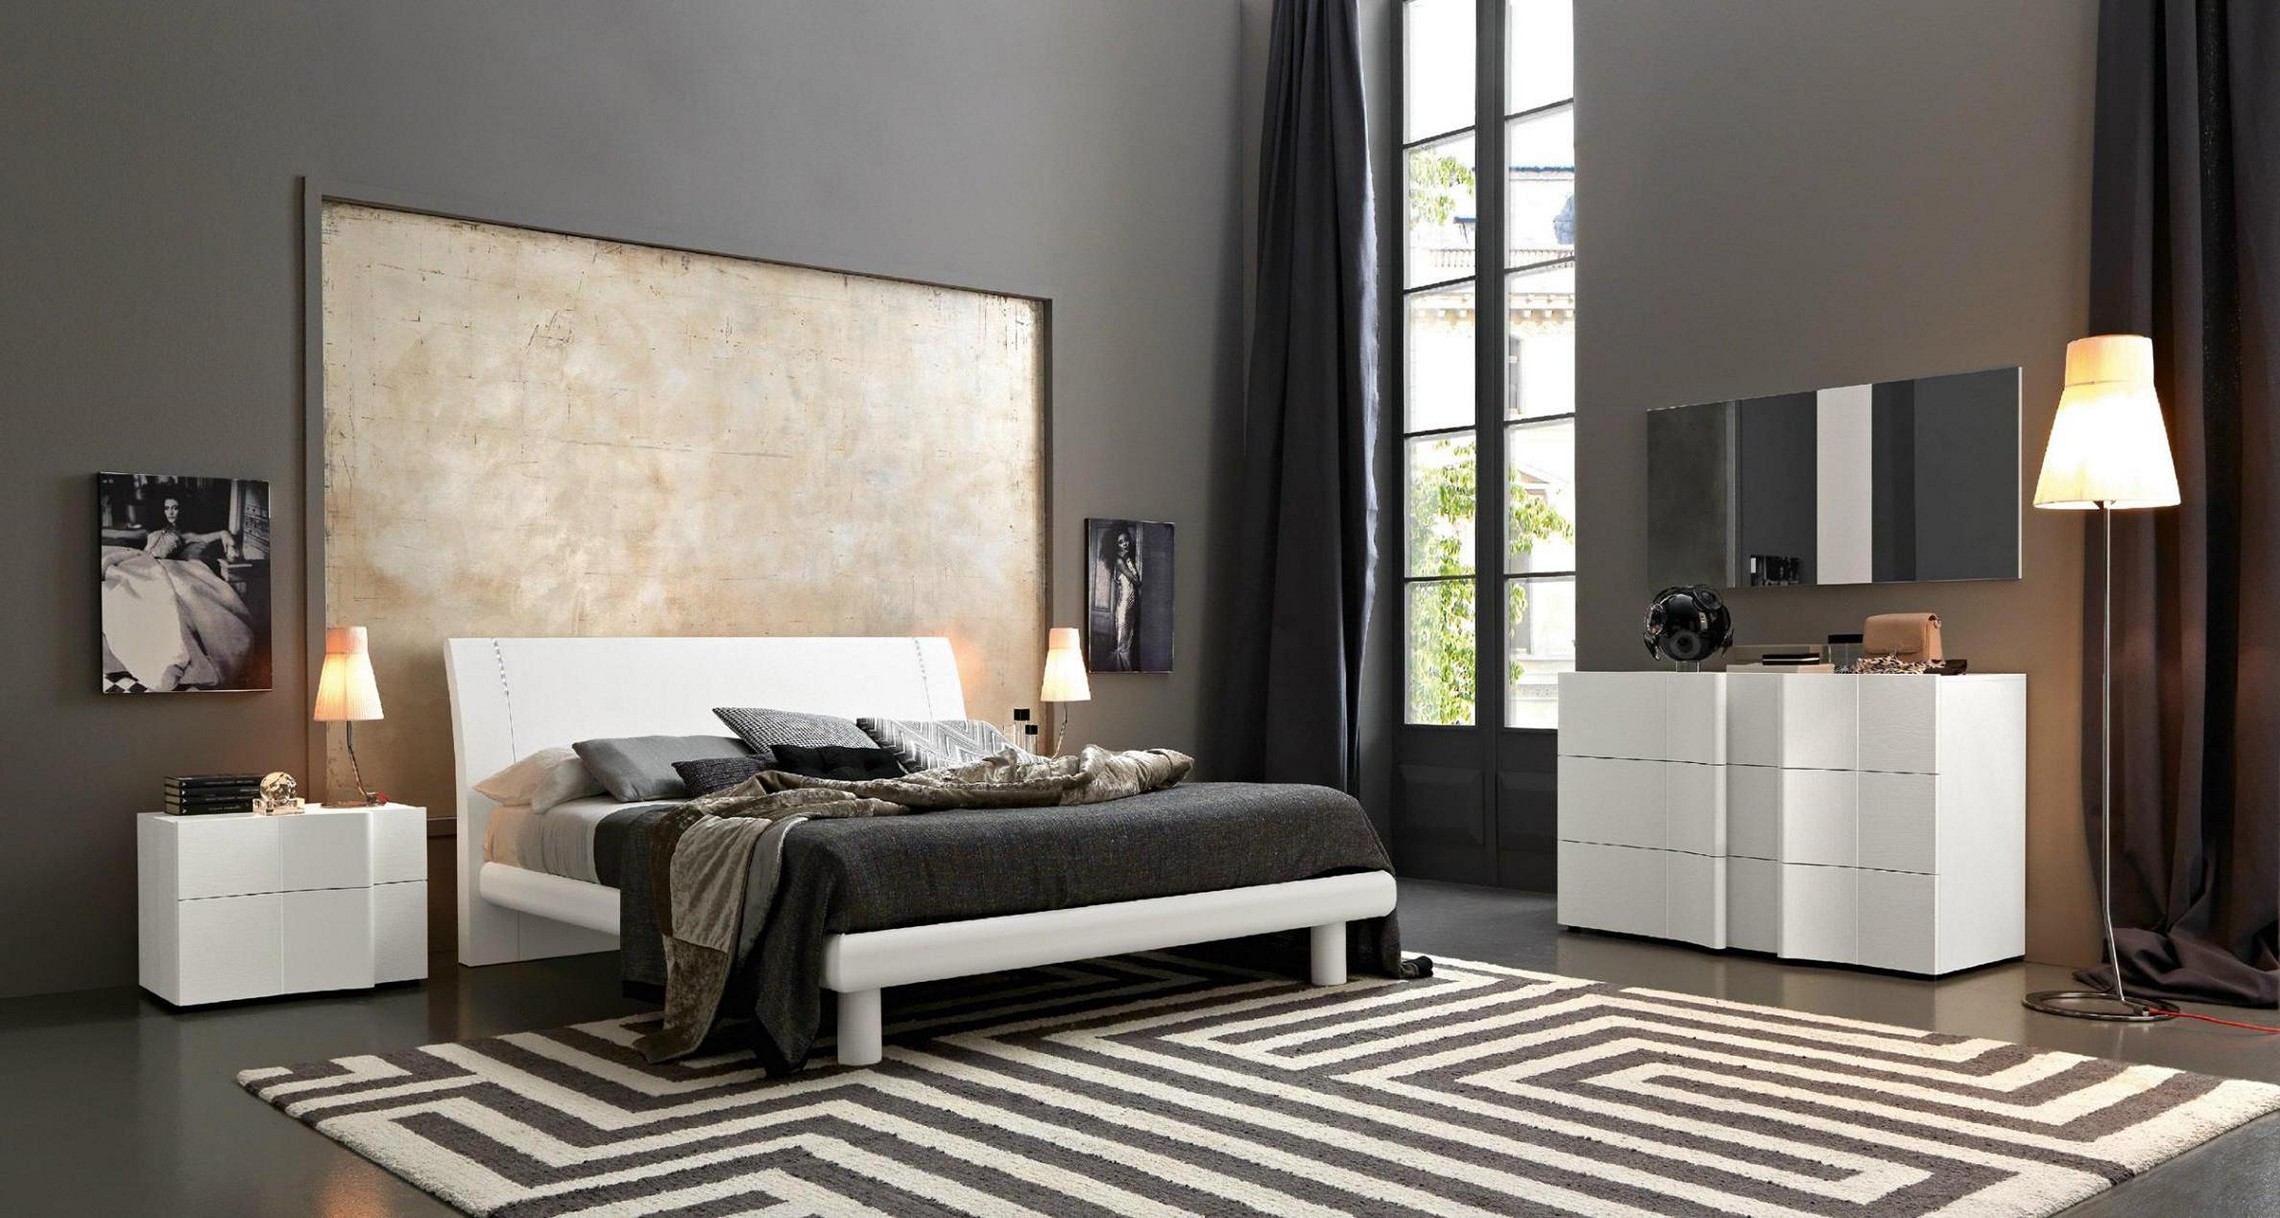 black designer bedroom furniture photo - 2